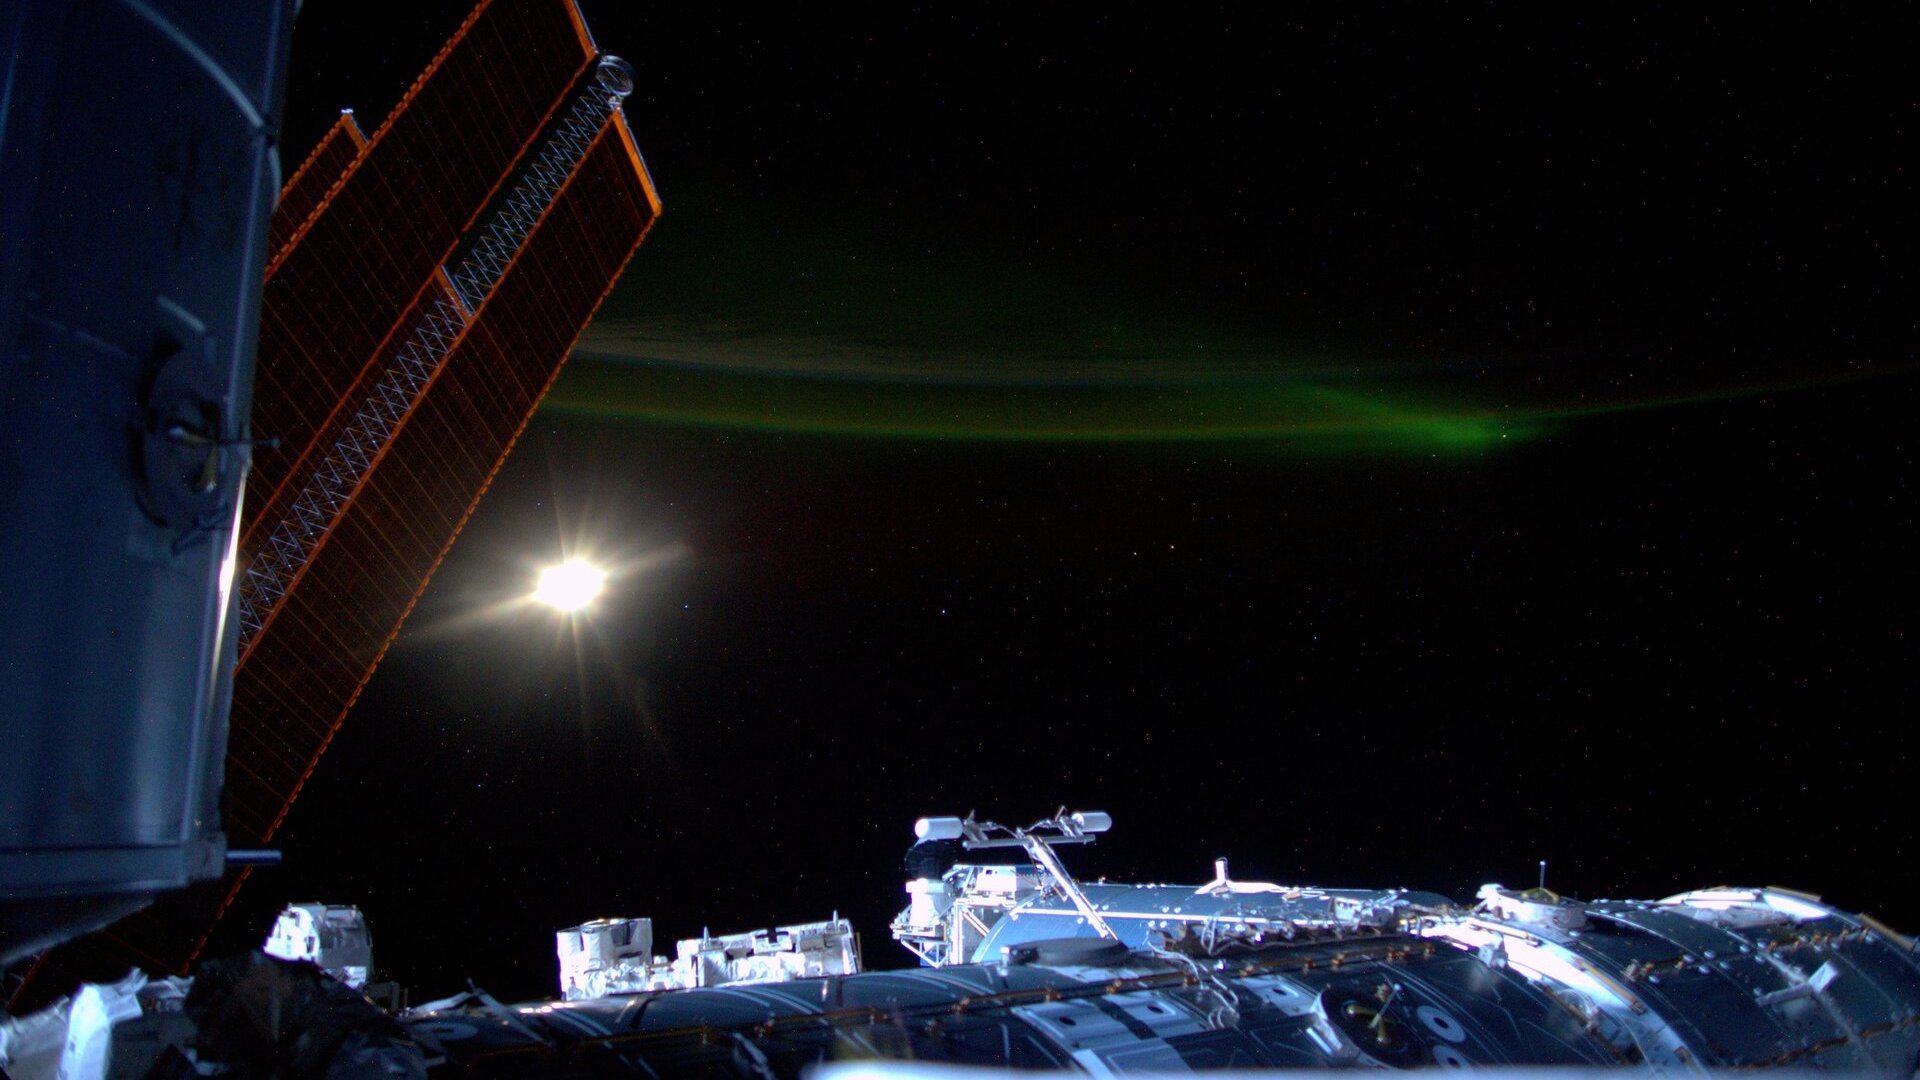 Фотография международной космической станции с Луной и слабым зеленым полярным сиянием на заднем плане.